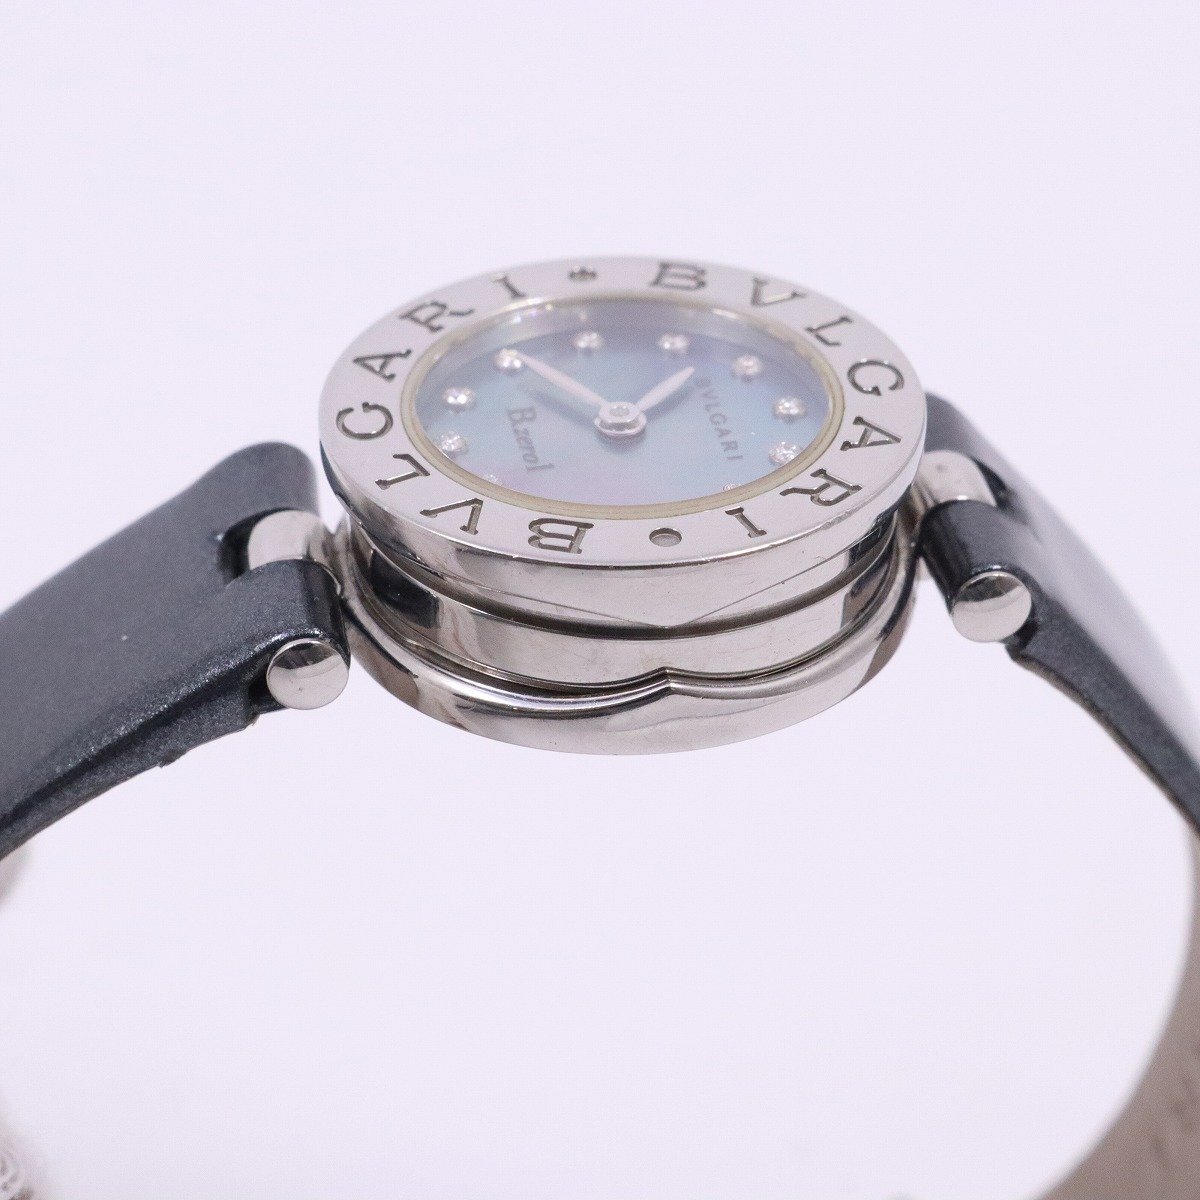  BVLGARY B-zero1 кварц женские наручные часы 12P с бриллиантом голубой ракушка циферблат оригинальный оттенок голубого эмаль ремень BZ22S[... ломбард ]